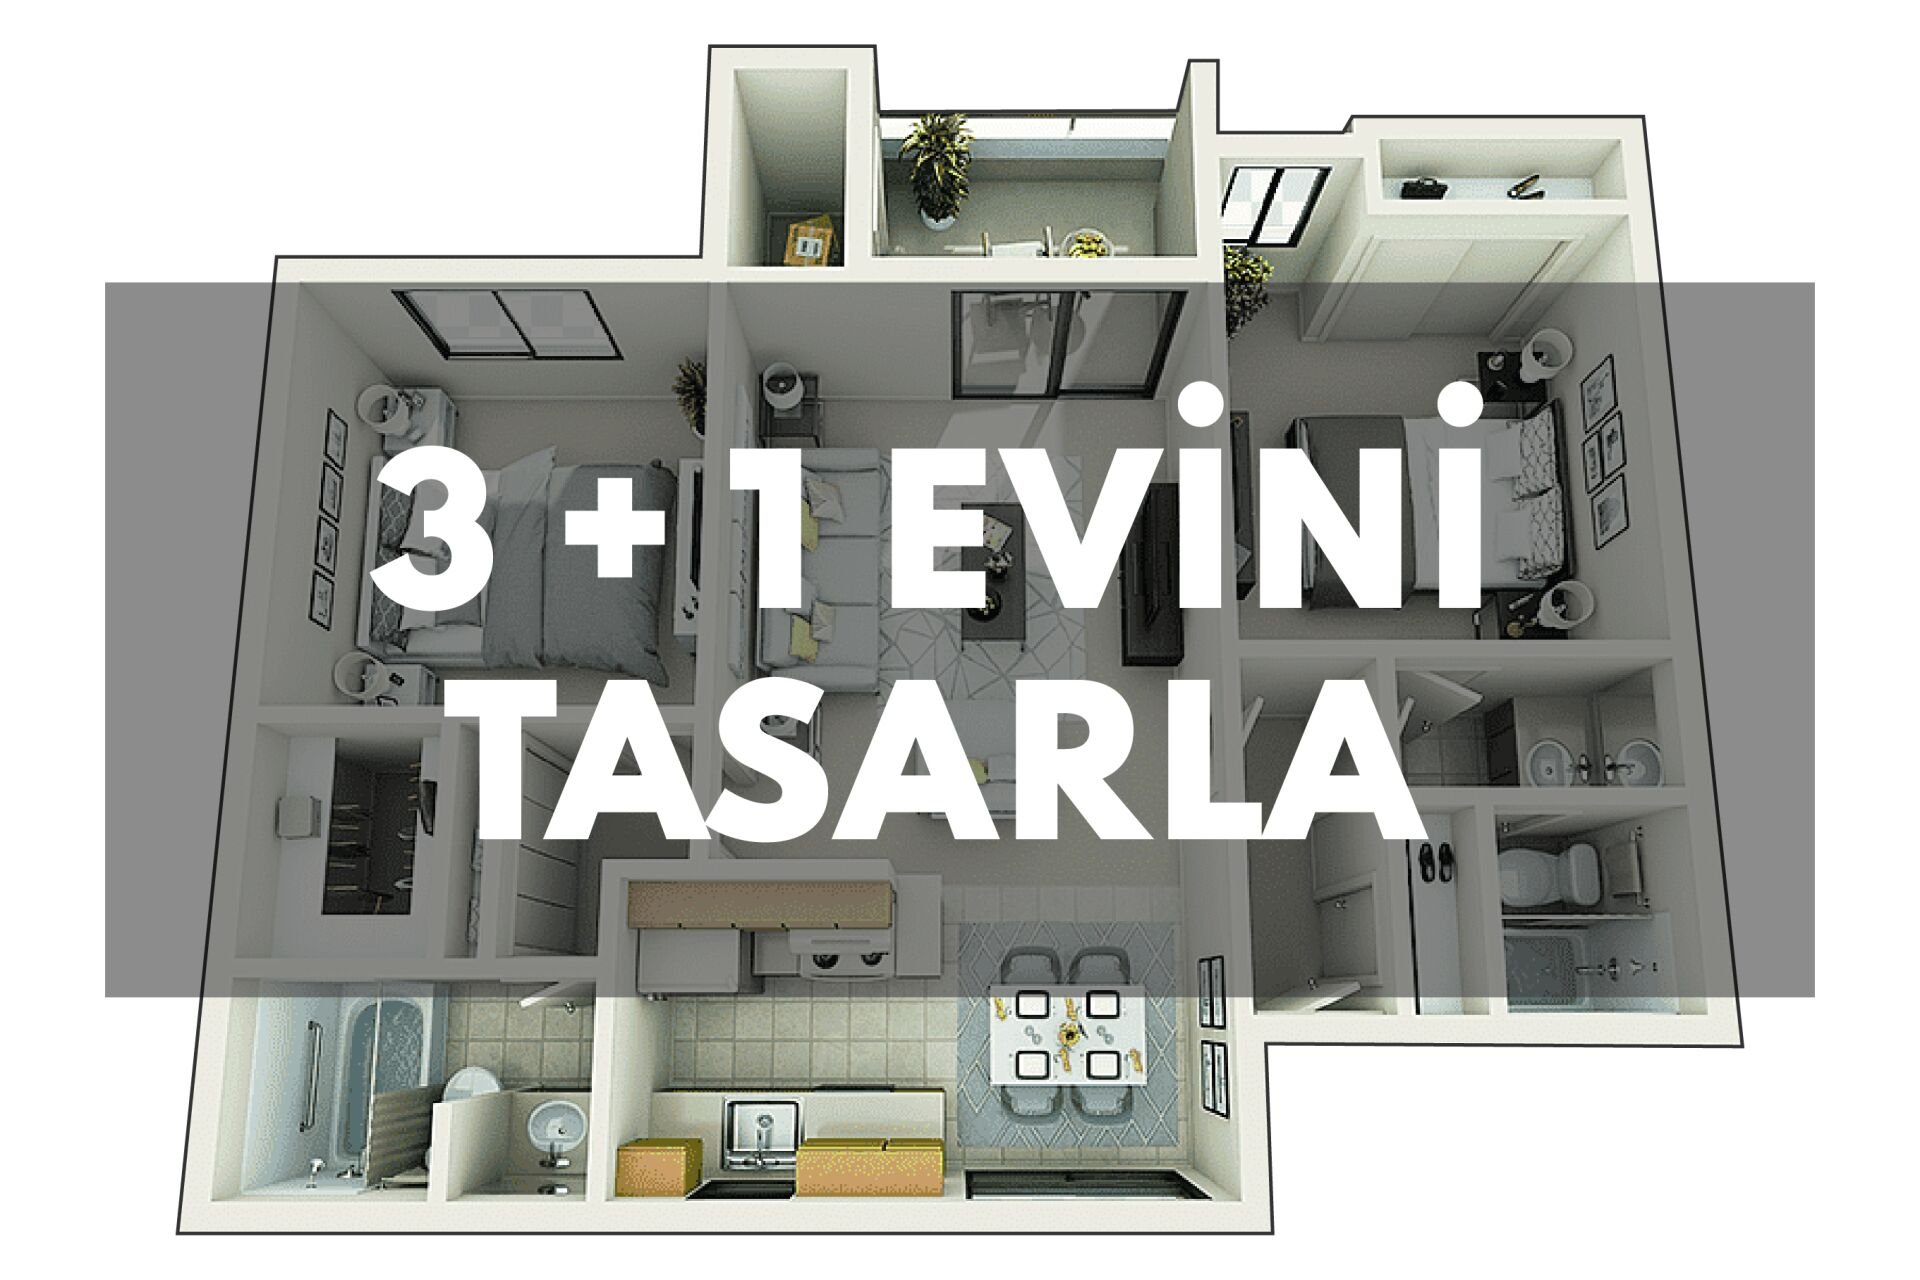 3 + 1 Evini Tasarla